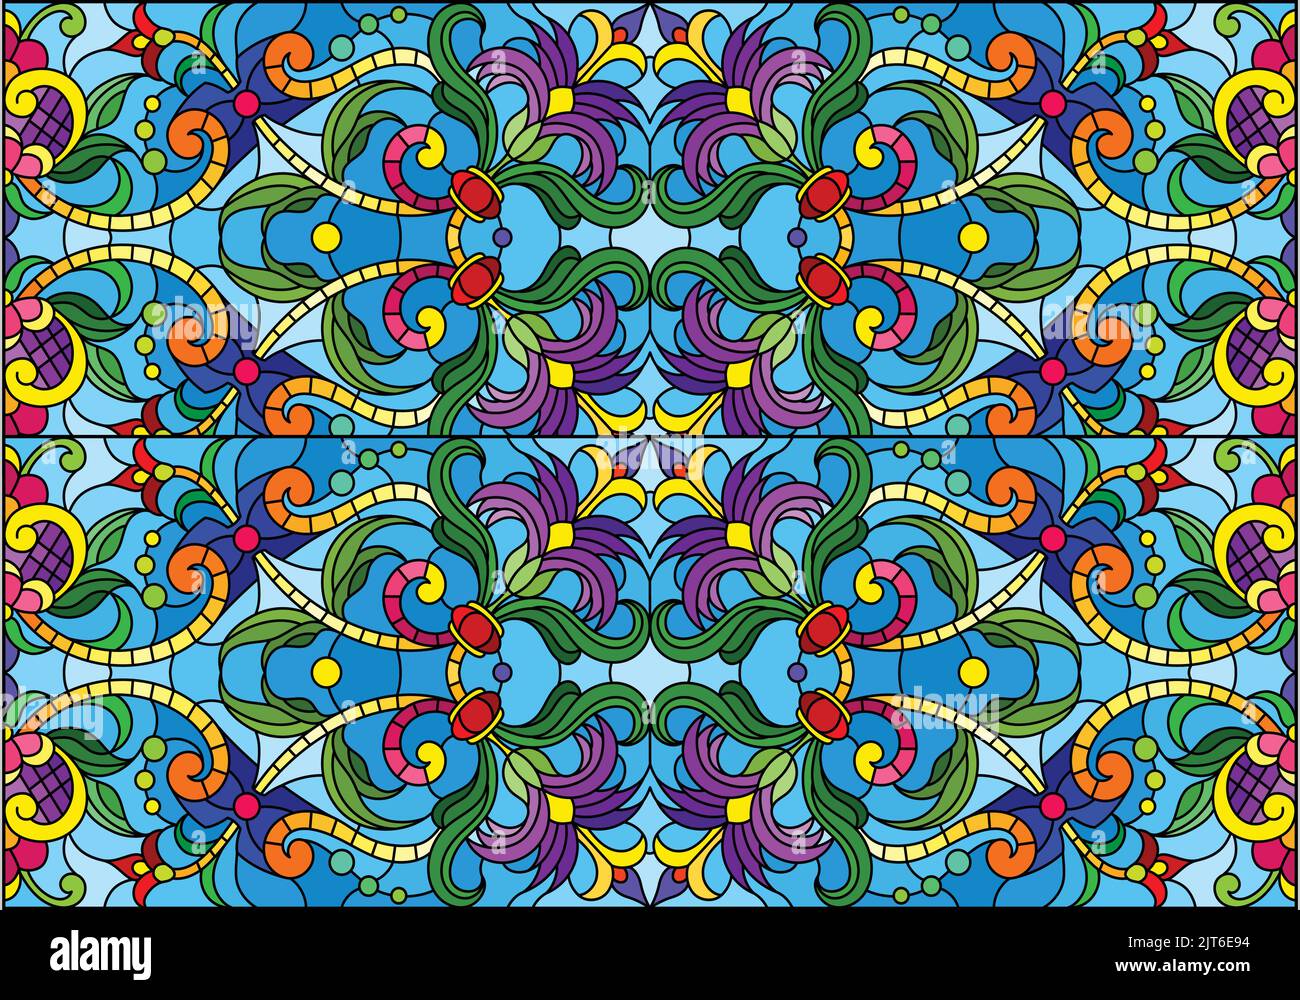 Computergrafiken. Illustration des abstrakten floralen Hintergrunds, psychedelisch symmetrisches Ornament. Traditionelles orientalisches Mosaik für Design, Teppich-Pat Stock Vektor